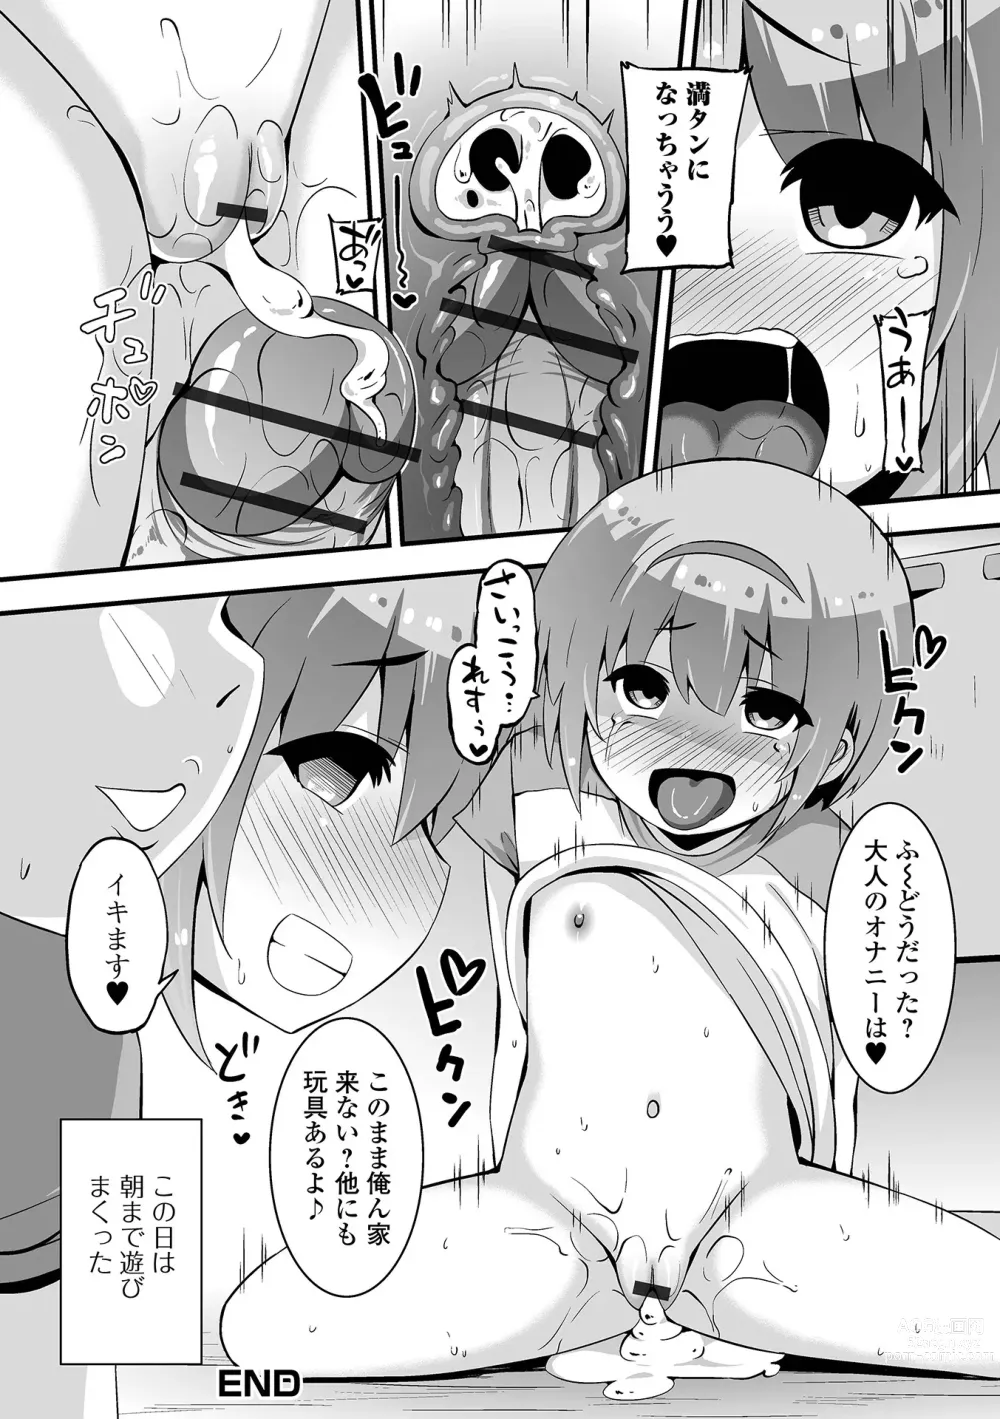 Page 16 of manga Ona asobi